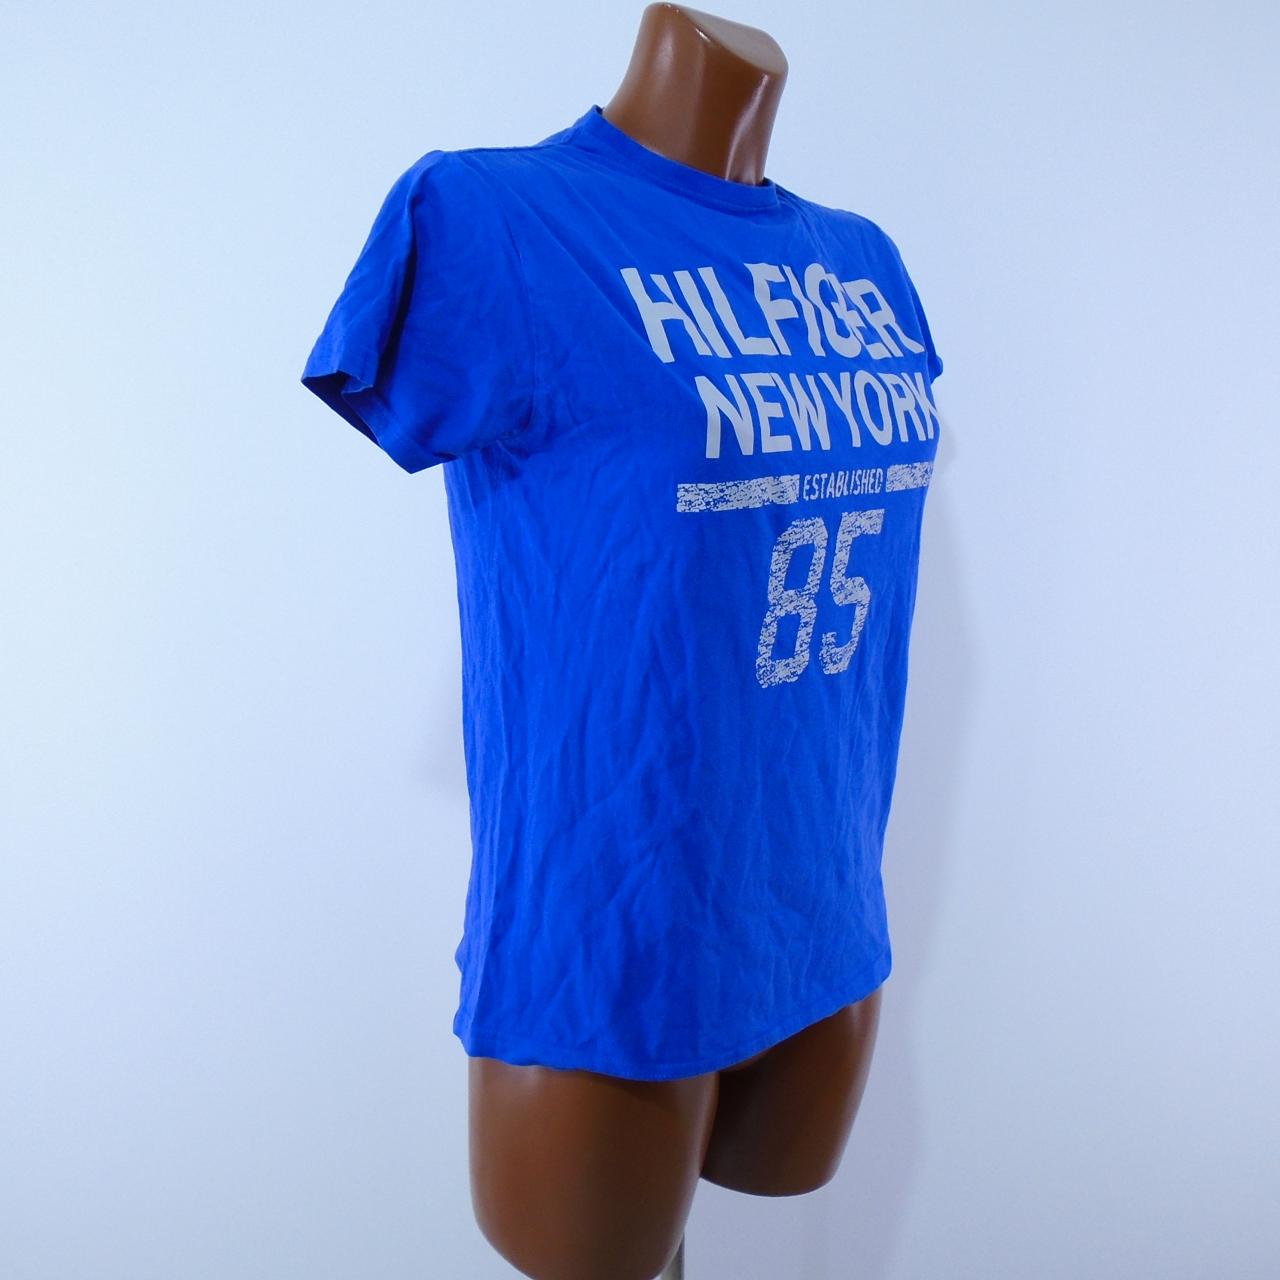 T-shirt femme Tommy Hilfiger.  Bleu foncé.  S. Utilisé.  très bien